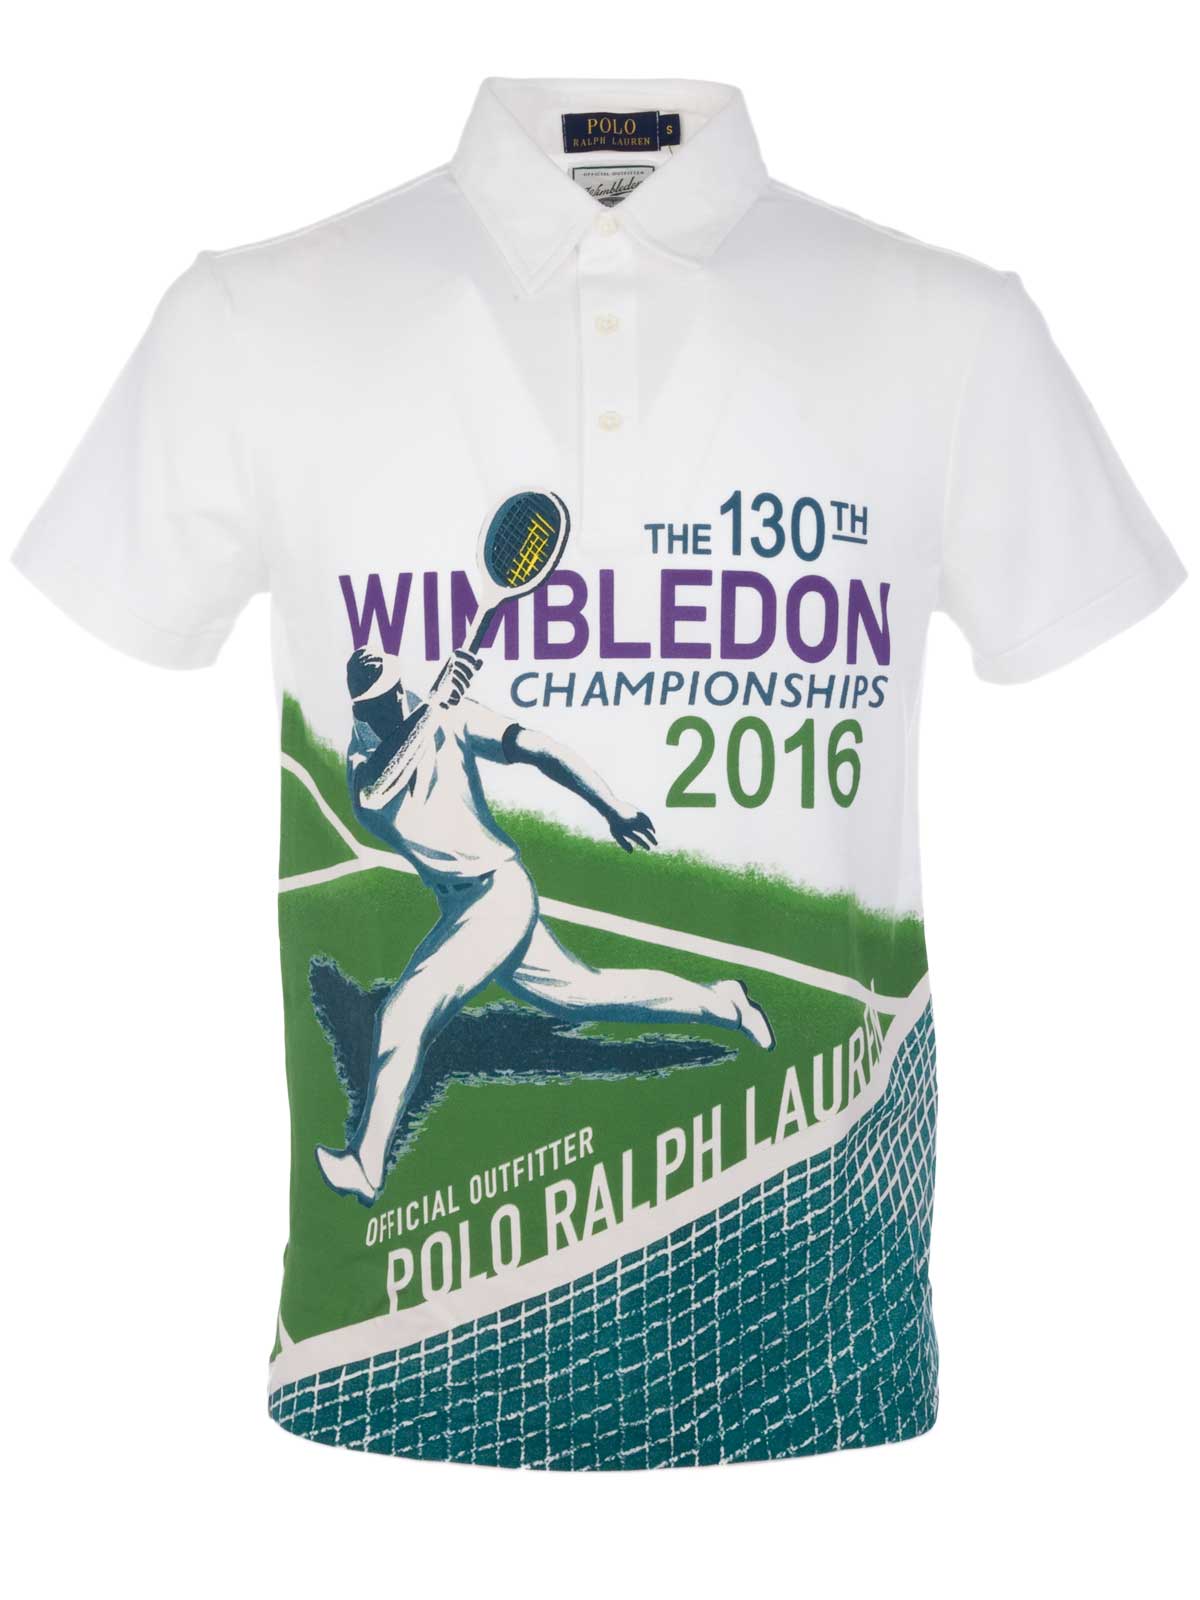 Polo Ralph Lauren Wimbledon Polo Shirt 